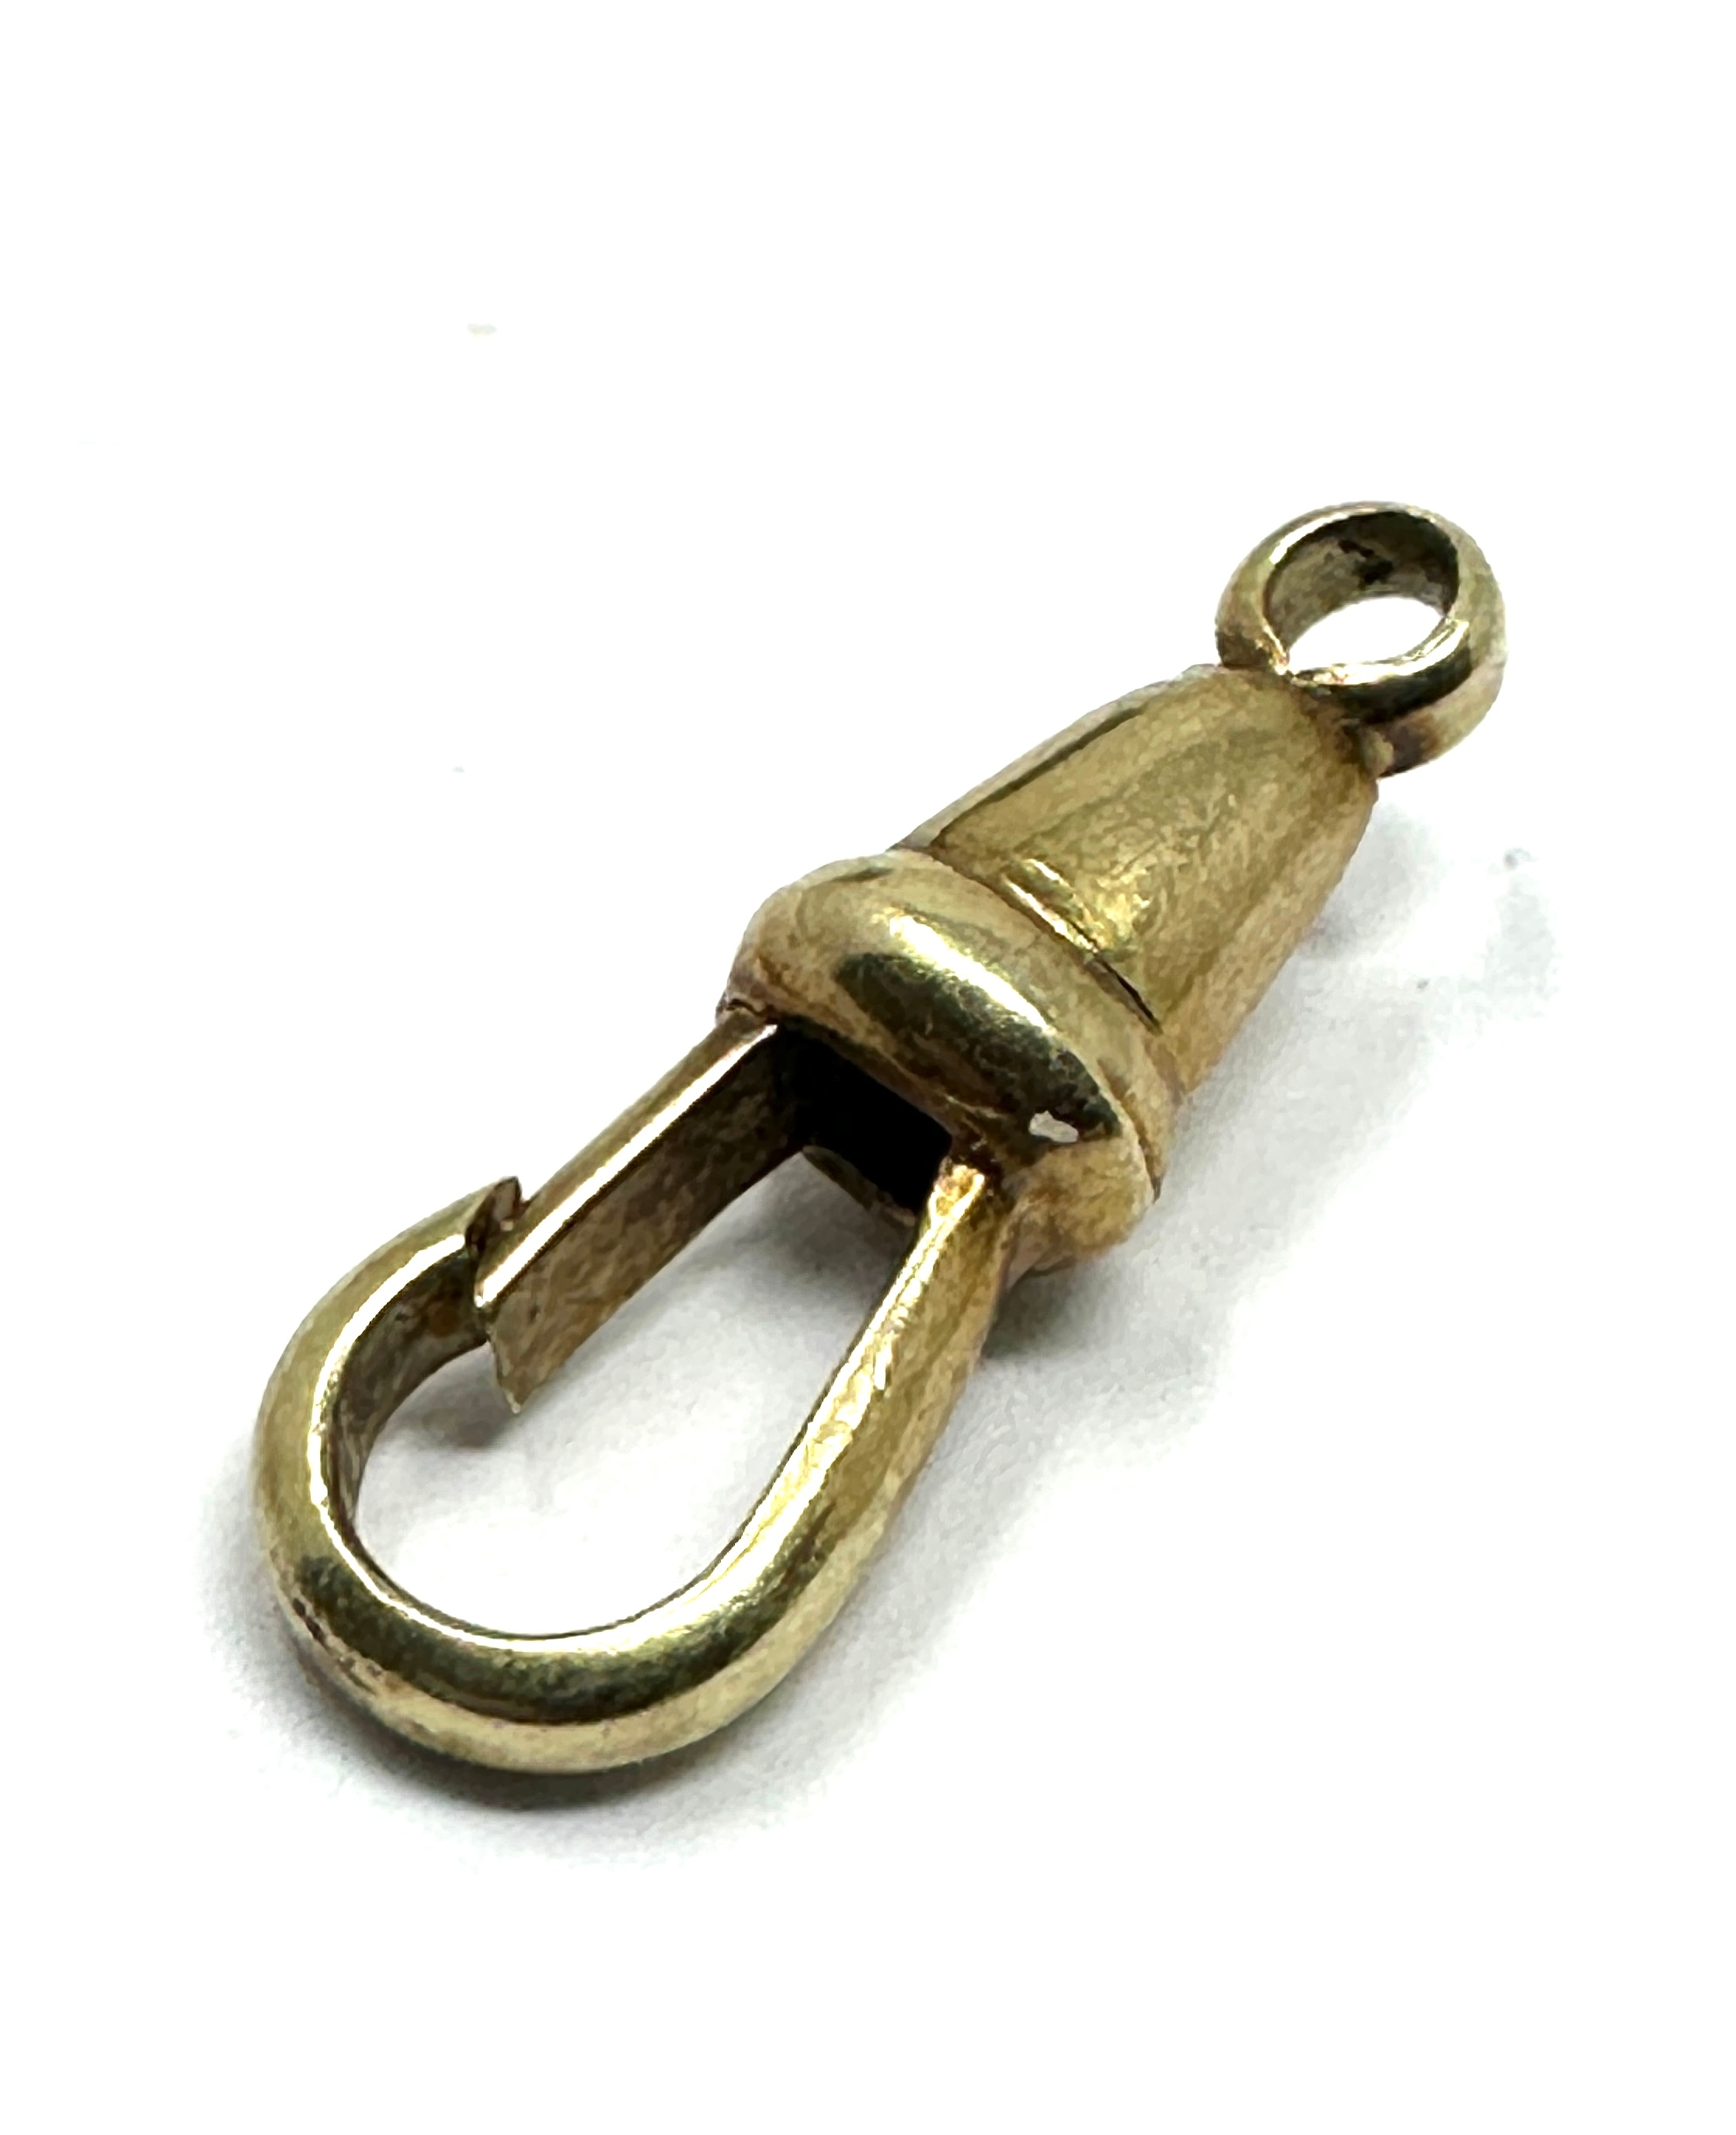 14ct gold watch chain dog clip weight 1.2g hallmarked 585